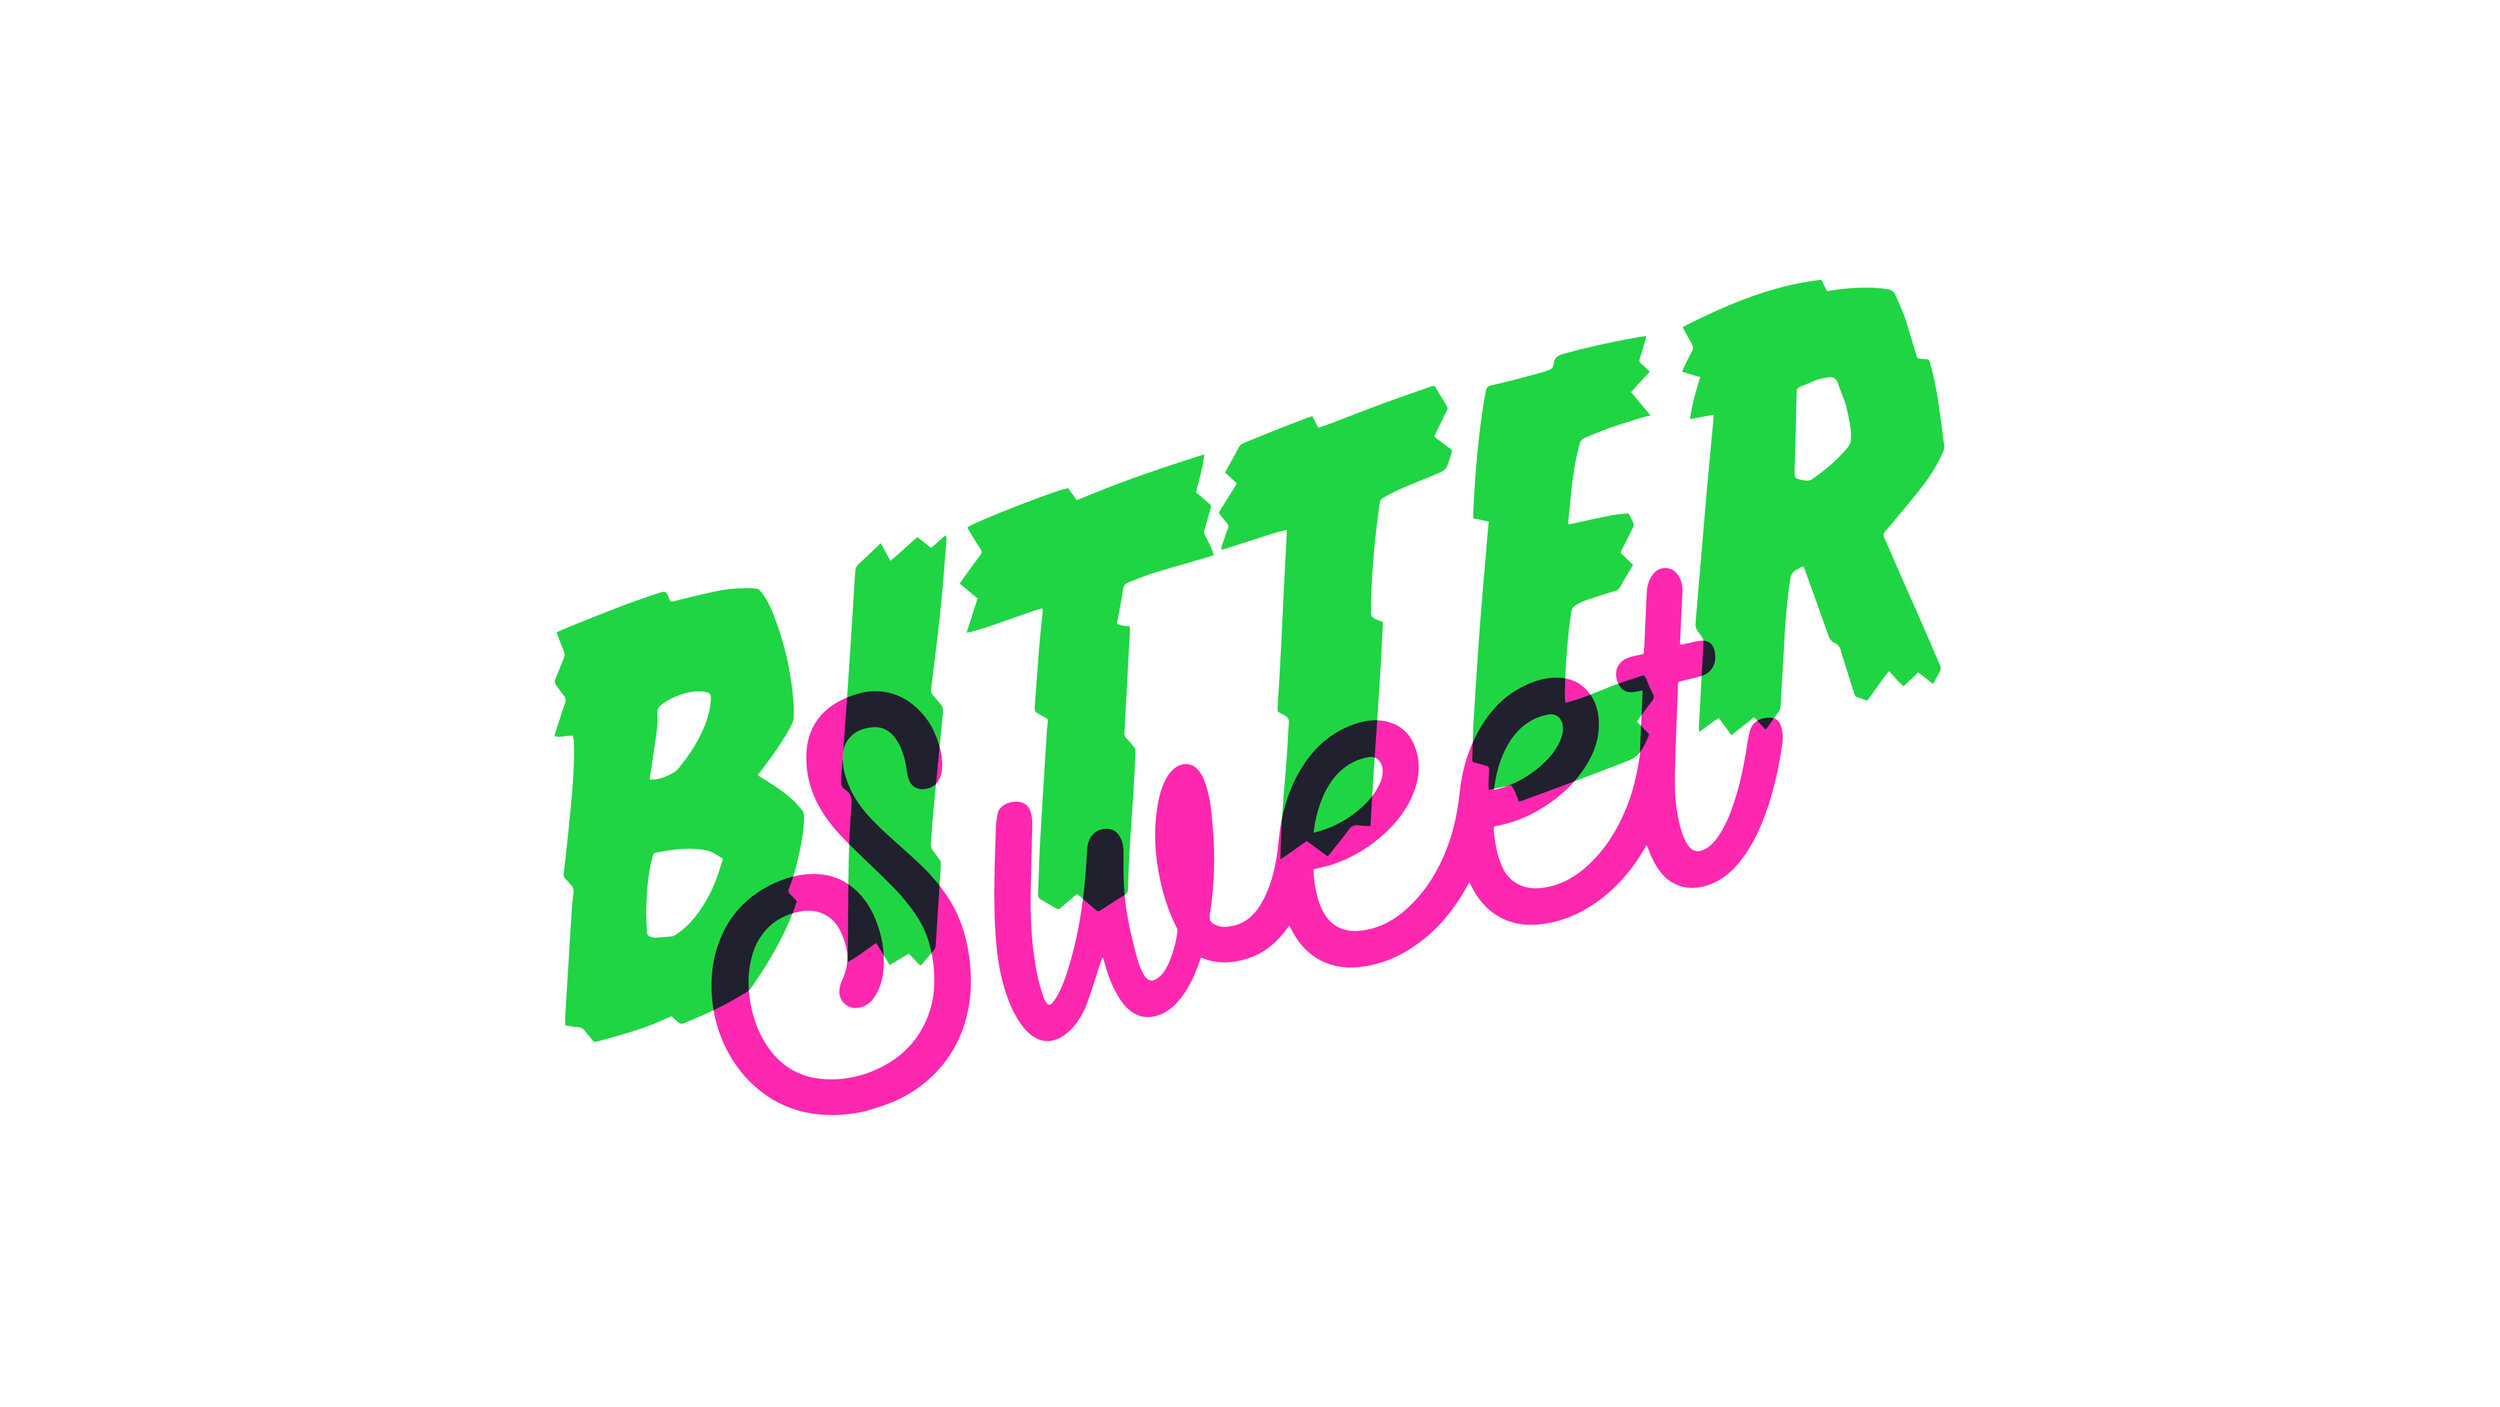 Bitter Sweet_2020_Artboard 11.jpg